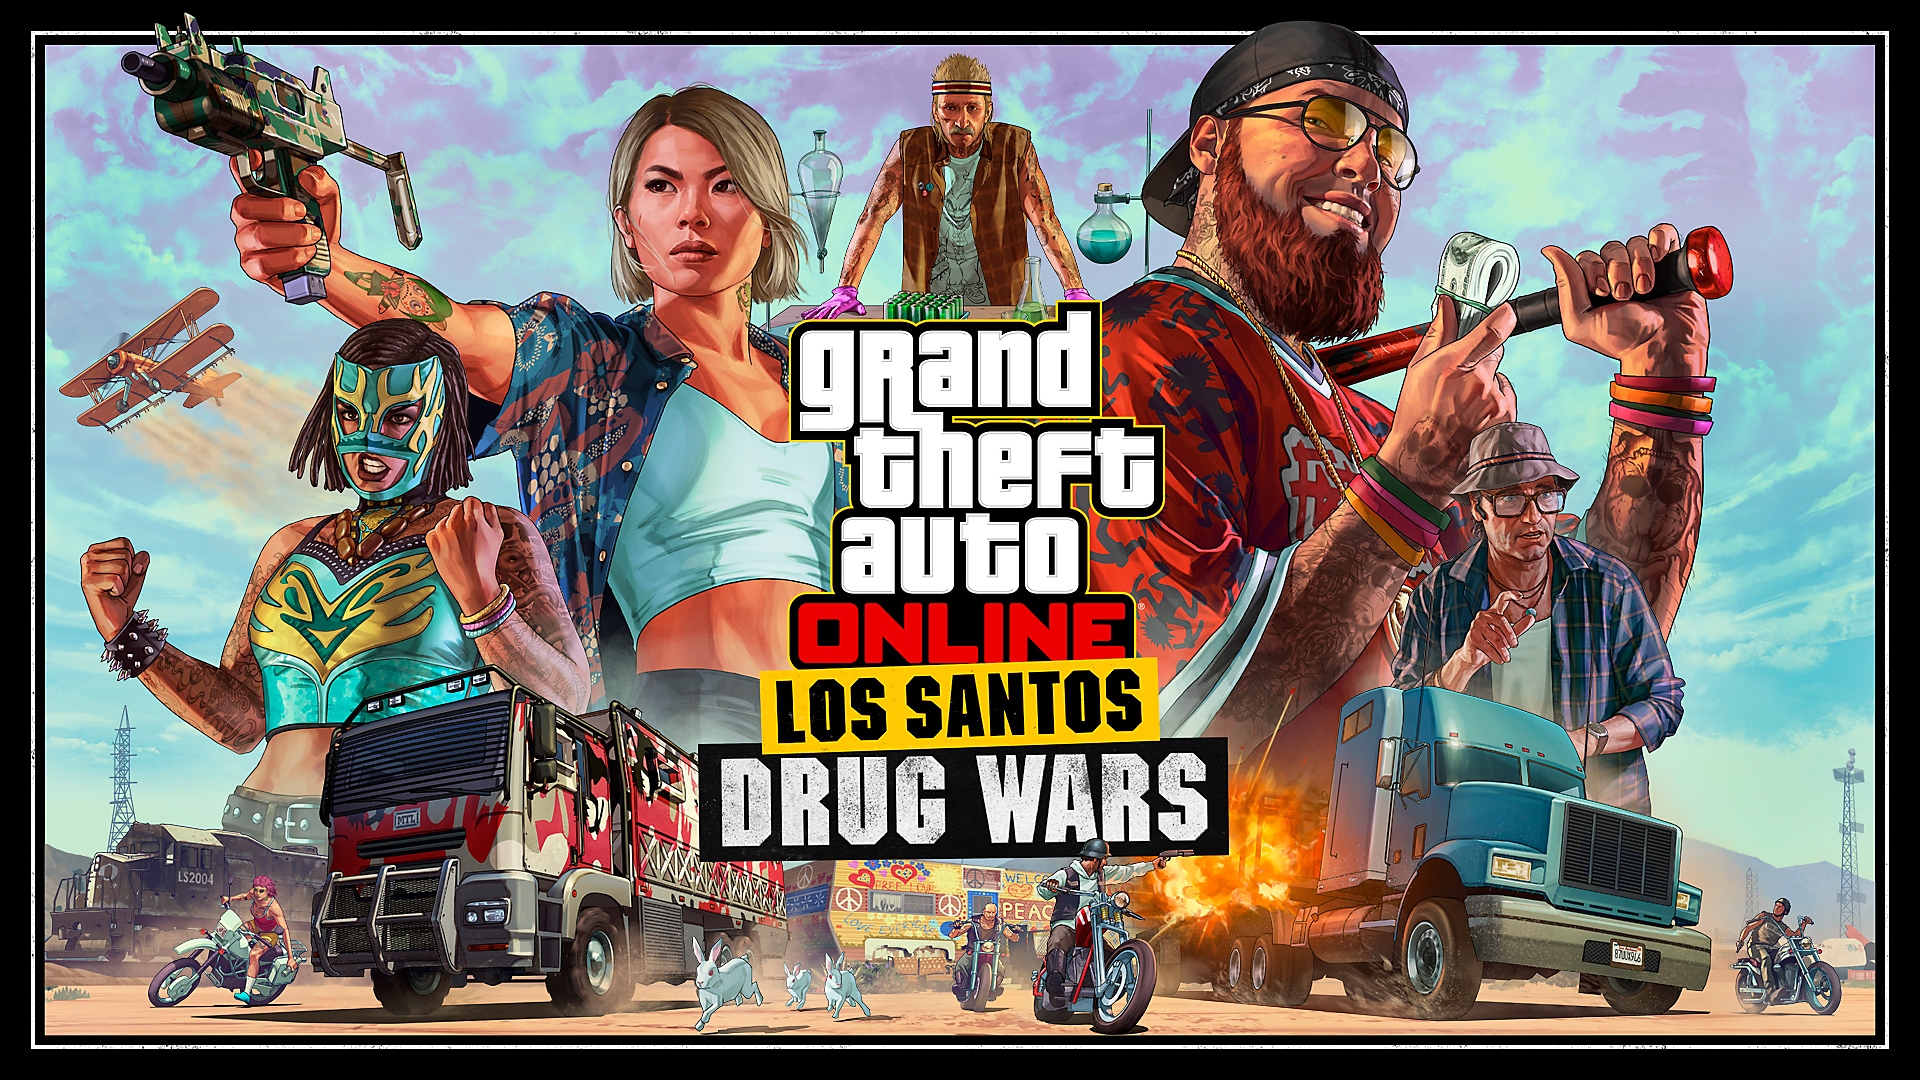 Grand Theft Auto Online - Los Santos Drug Wars Trailer